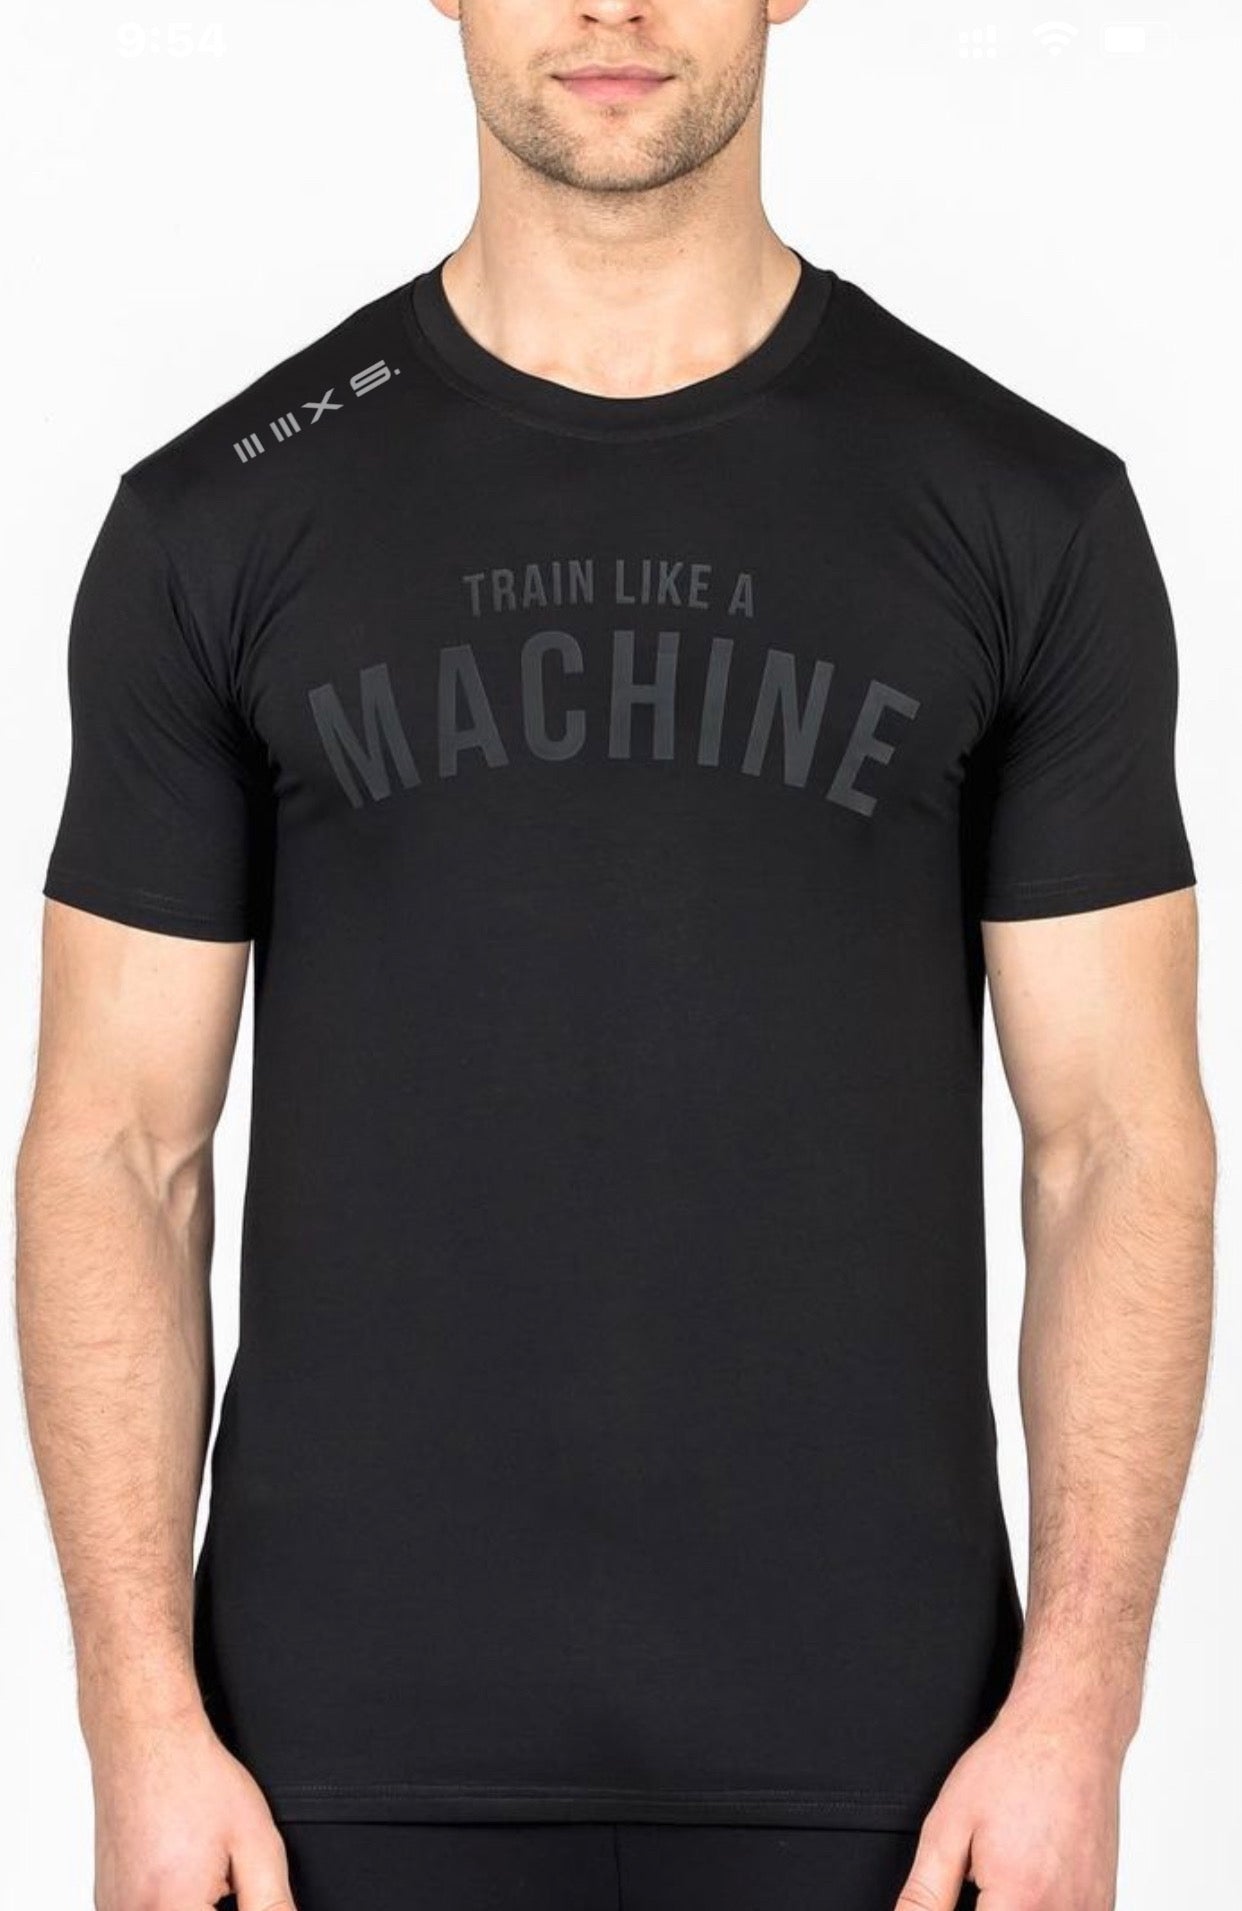 MACHINE Series Black short sleeve tshirt